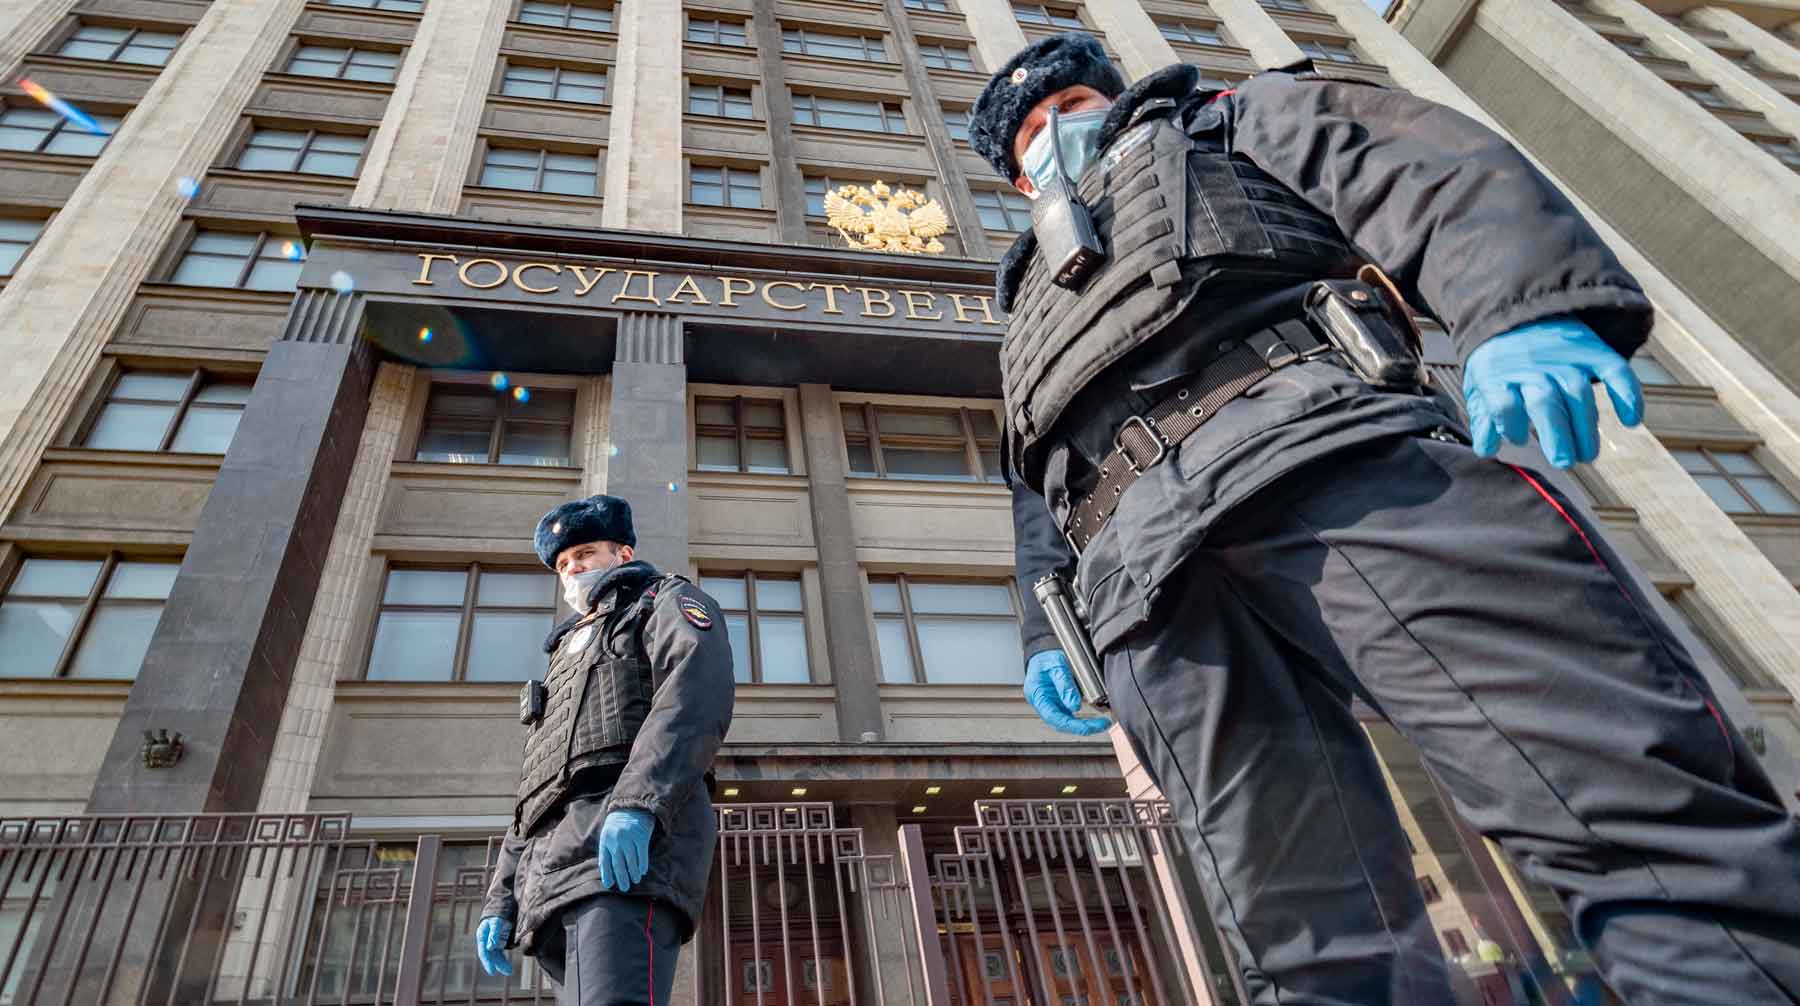 Мужчина дебоширил в доме и после прибытия правоохранителей набросился на них с кулаками Фото: © Global Look Press / Konstantin Kokoshkin